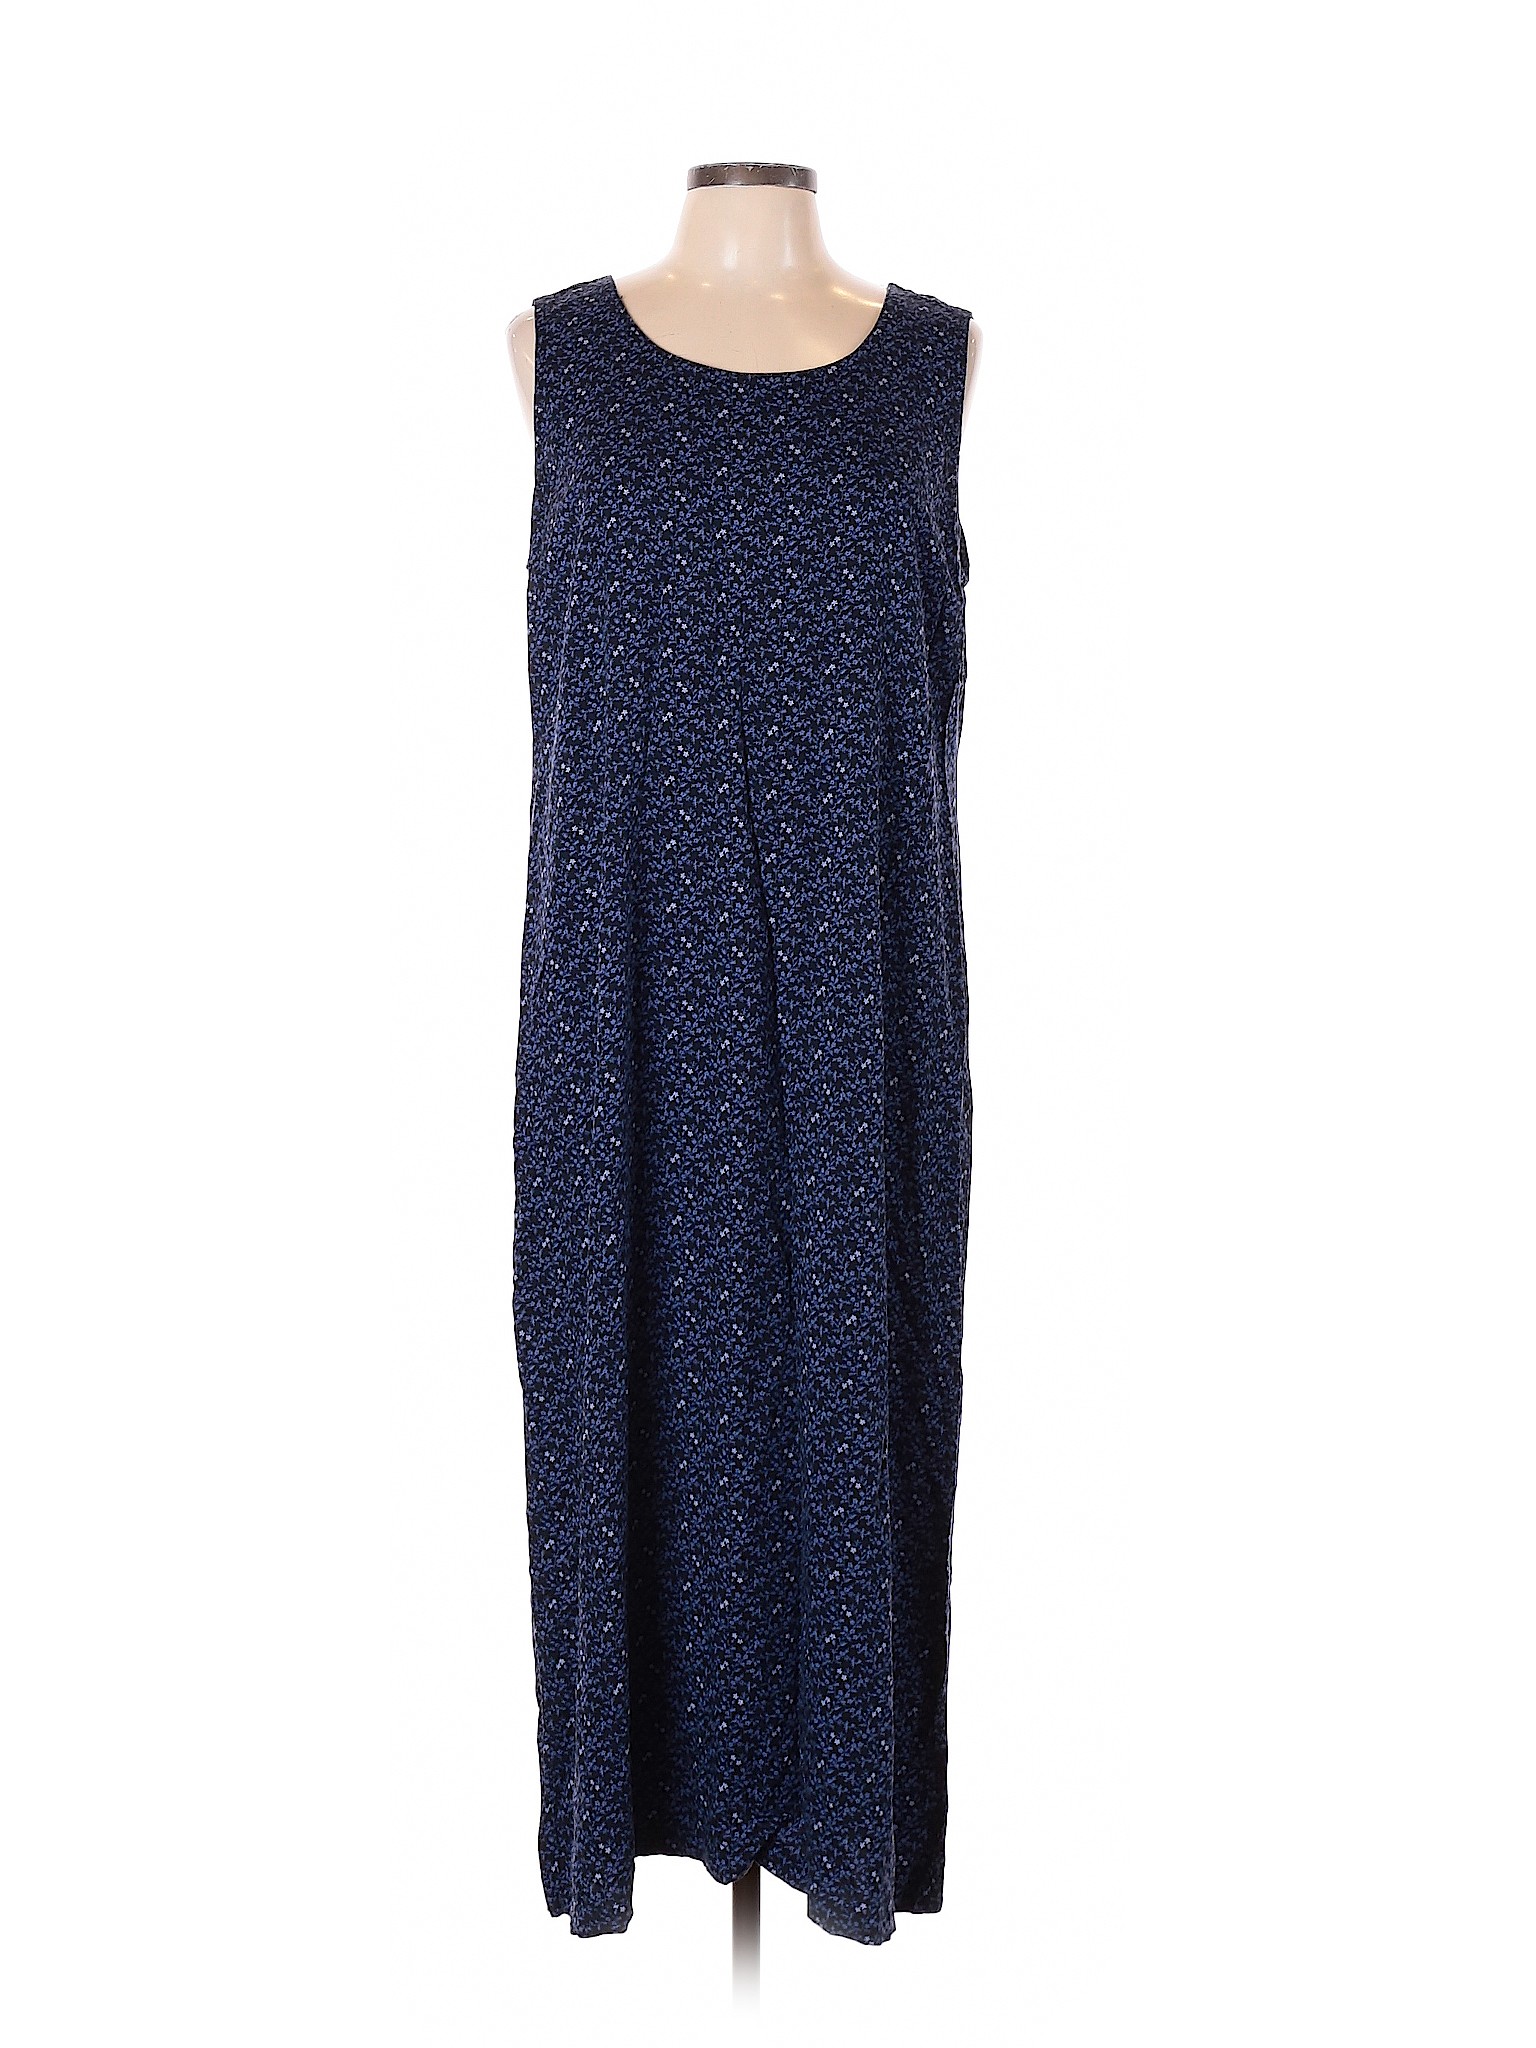 Faded Glory Women Blue Casual Dress XL | eBay